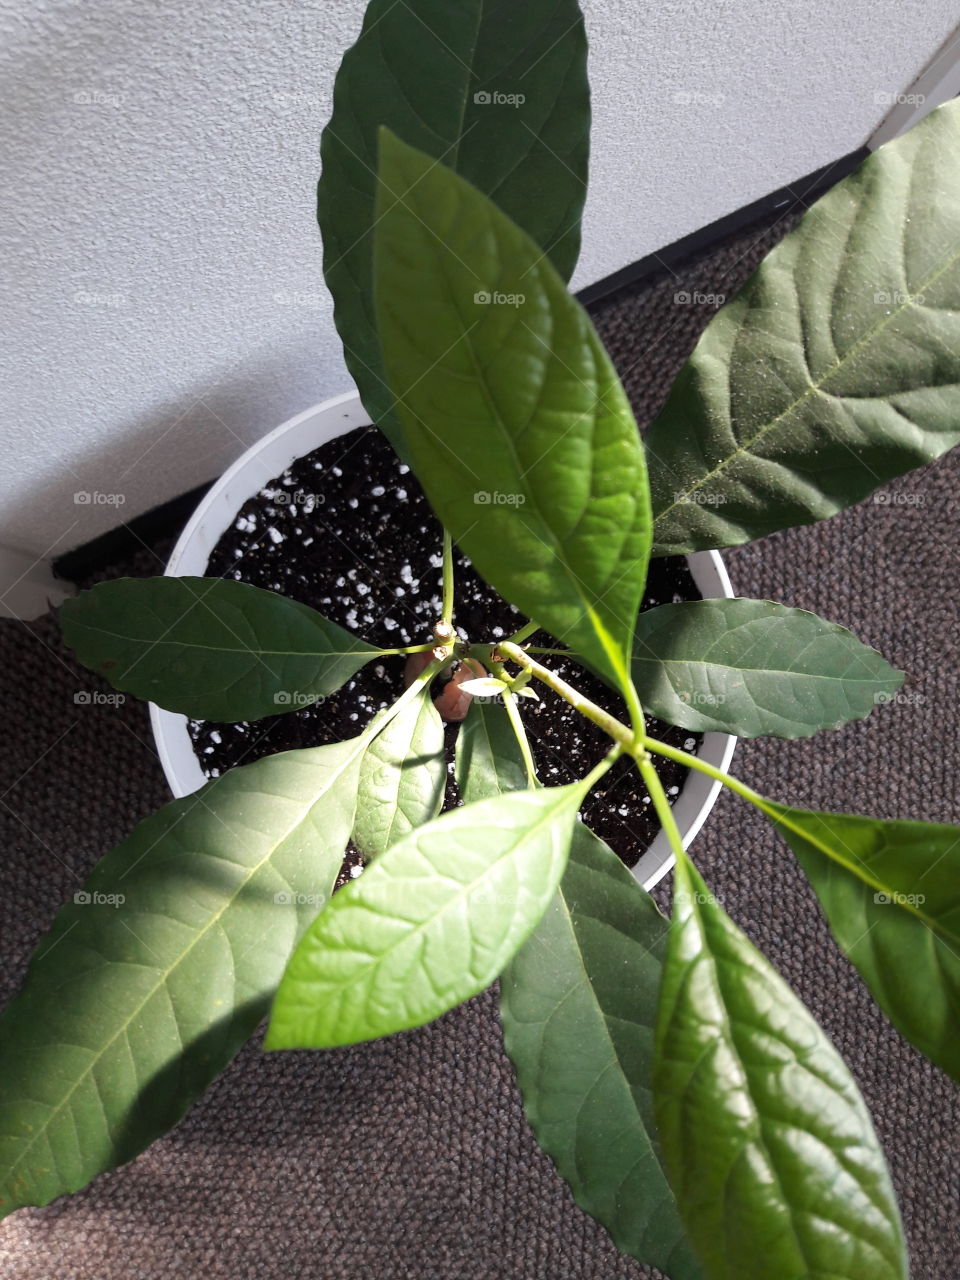 my 1 year old avocado tree grown indoors